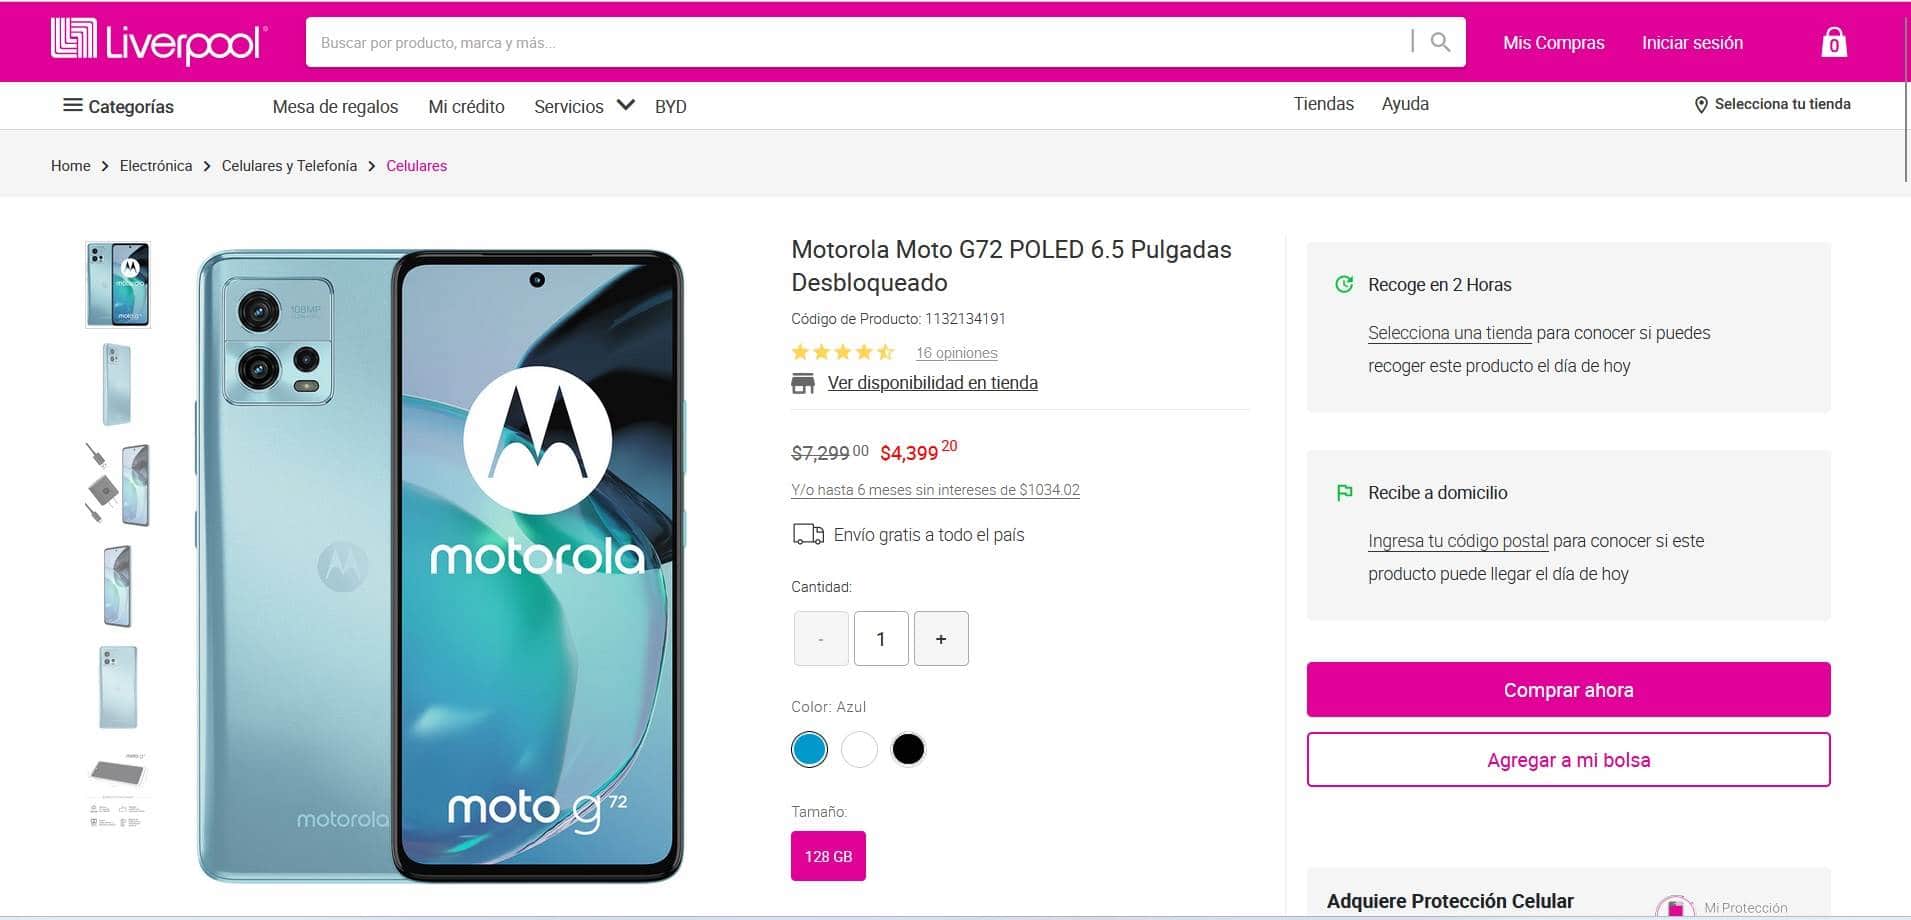  Motorola Moto G72 con descuento